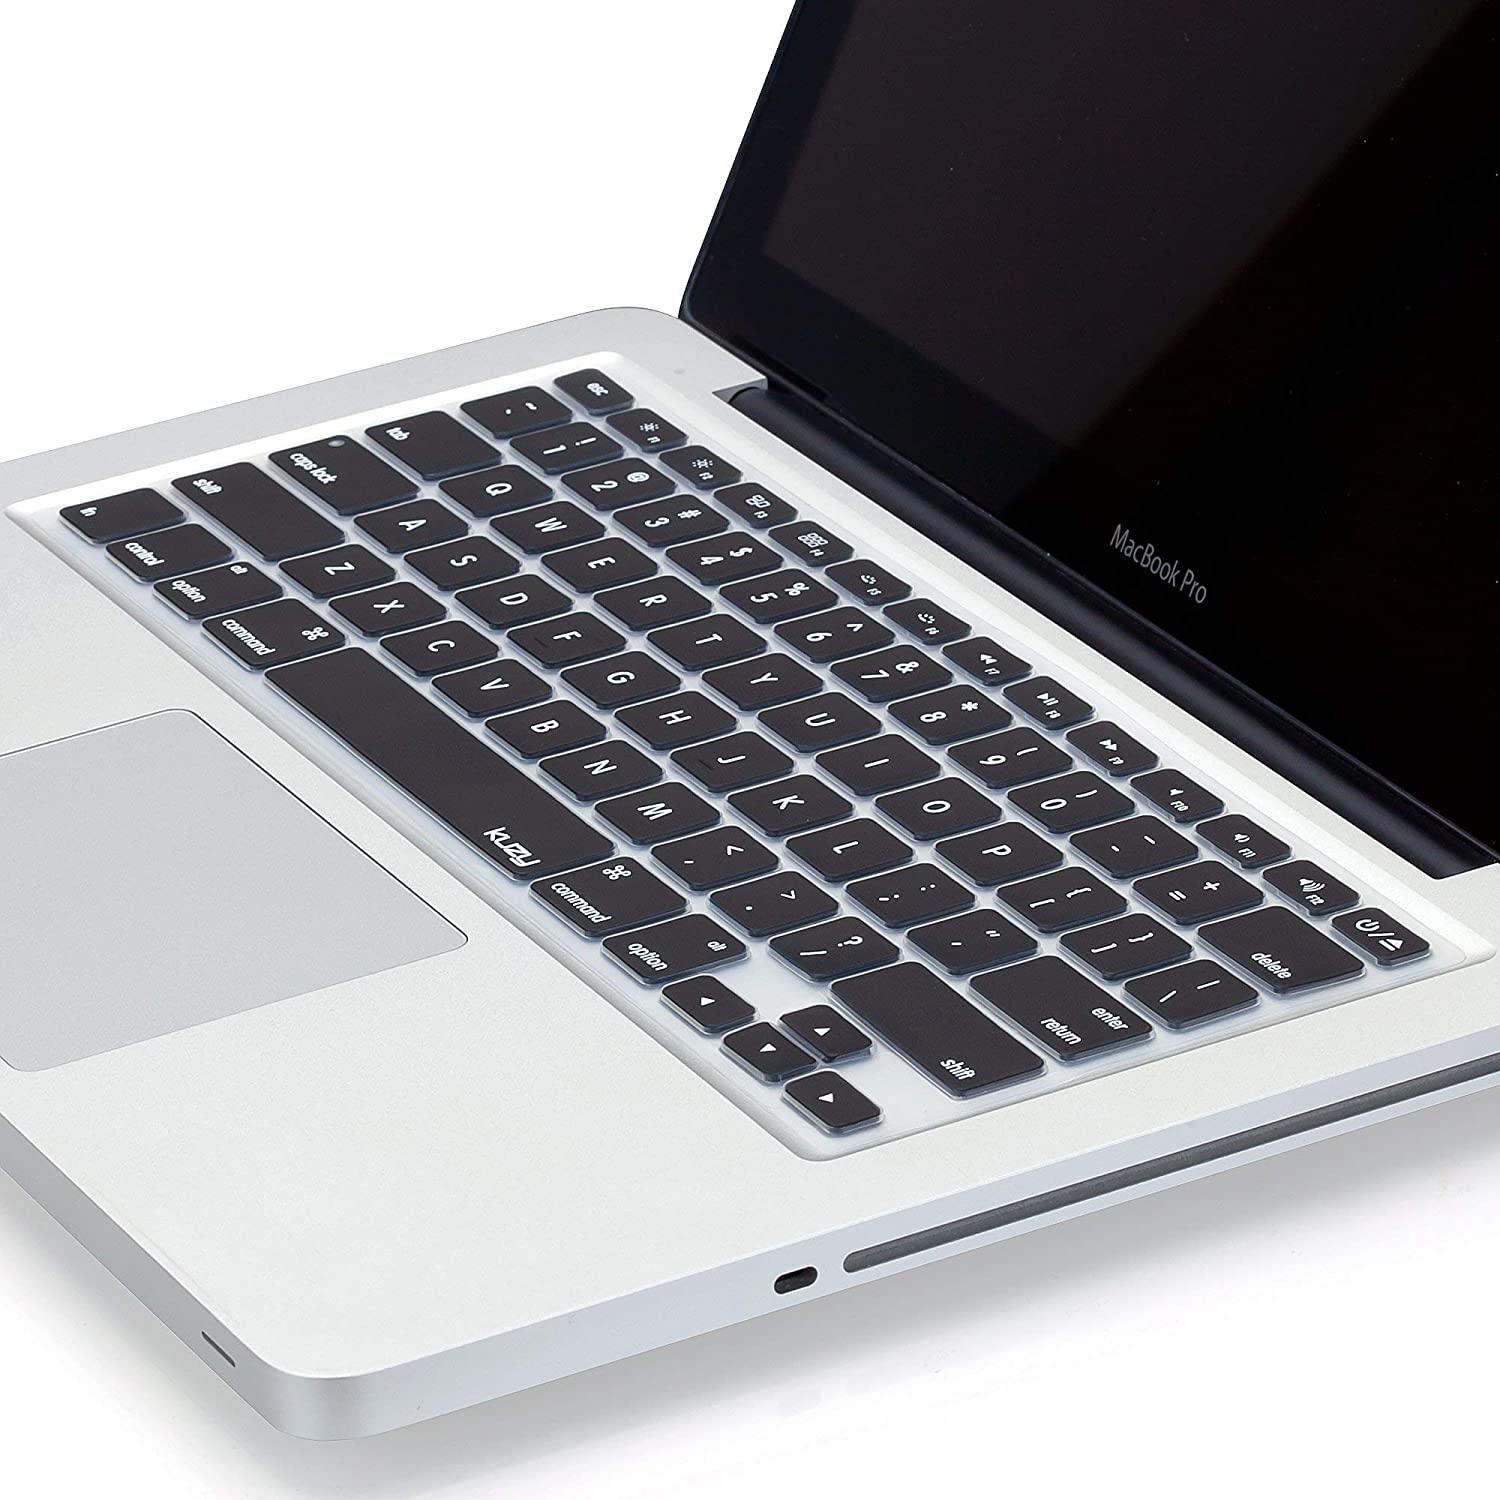 Dealsplant Laptop Keyboard Skin protector for MacBook Pro 13.3 inch Model: A1278 (MC374LL/A, MC375LL/A, MC700LL/A, MC724LL/A)-Keyboard Protectors-dealsplant